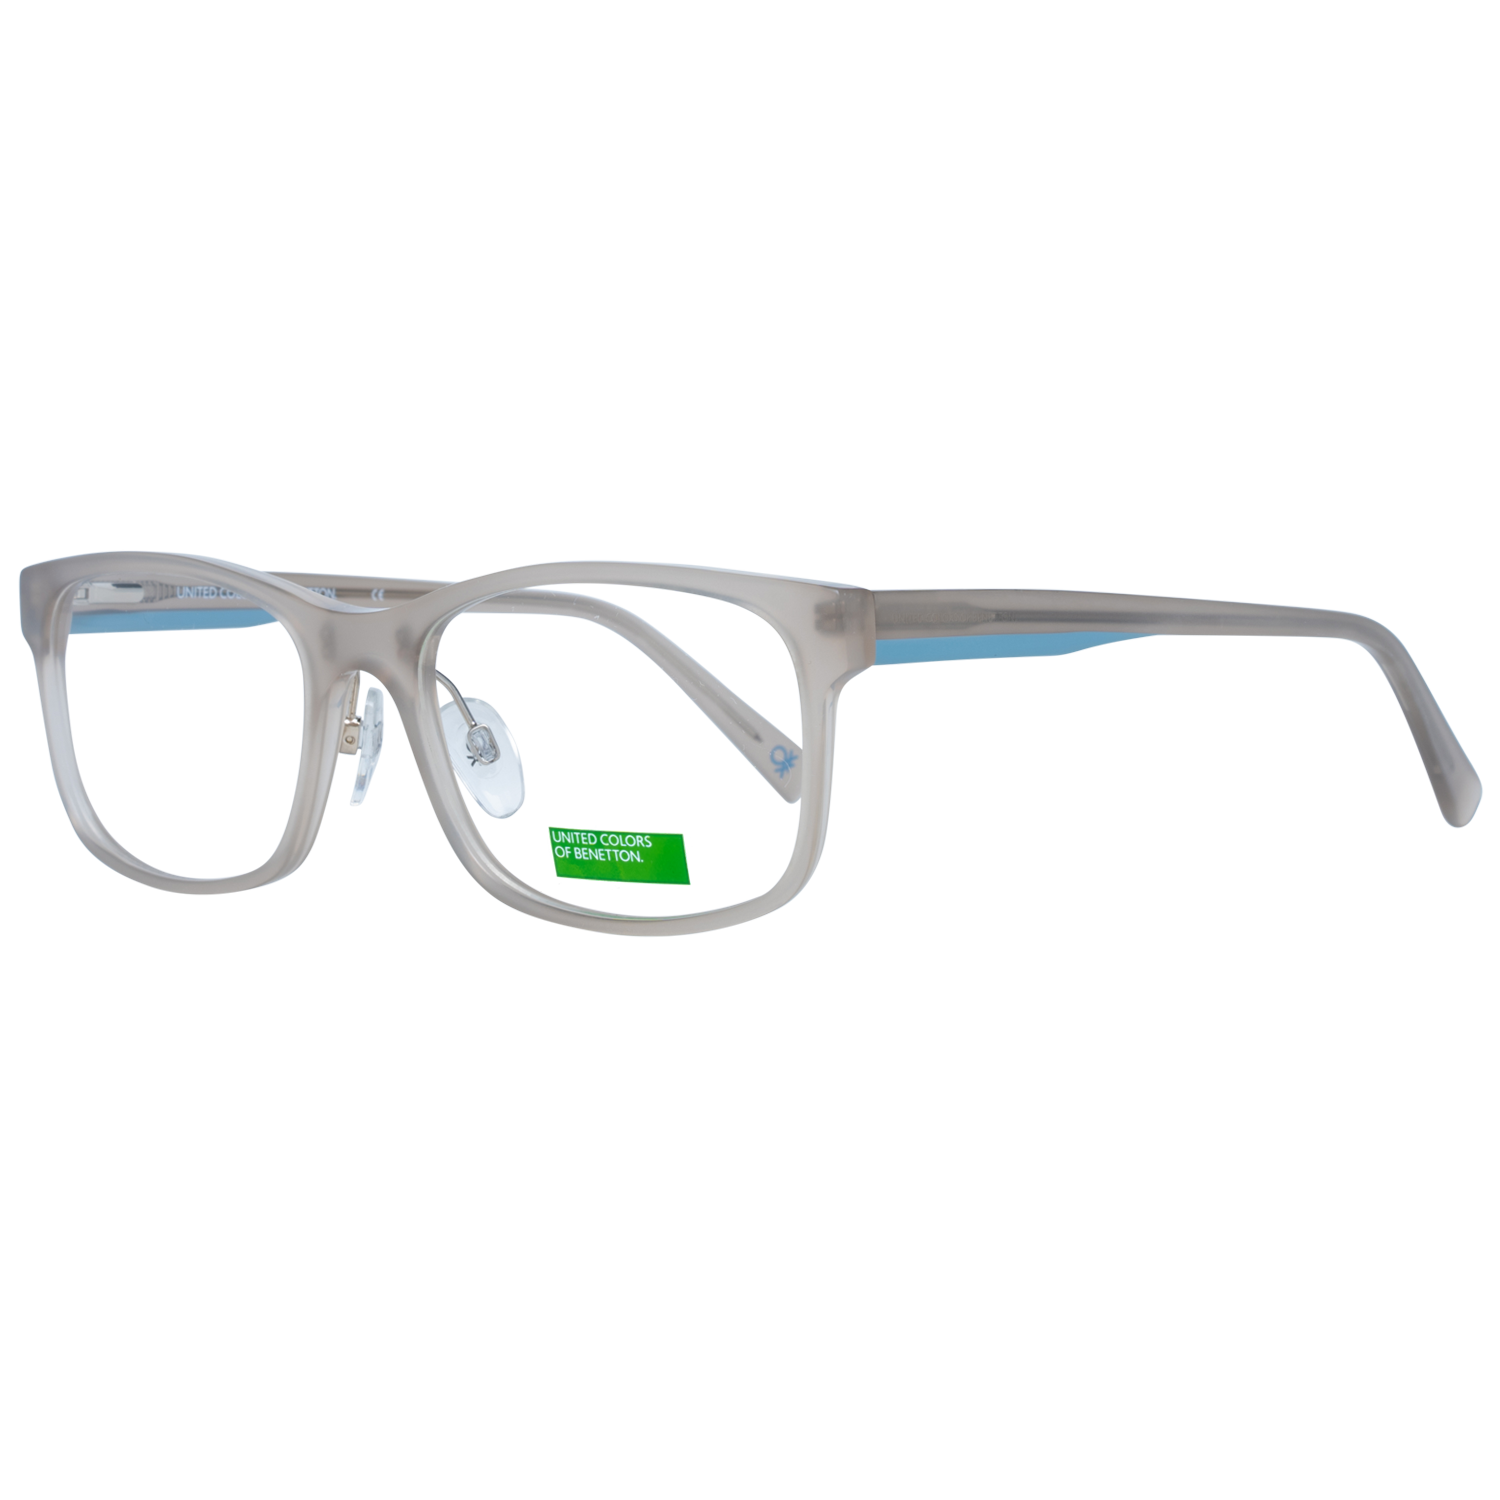 Benetton Frames Benetton Glasses Frames BEO1041 917 54 Eyeglasses Eyewear UK USA Australia 